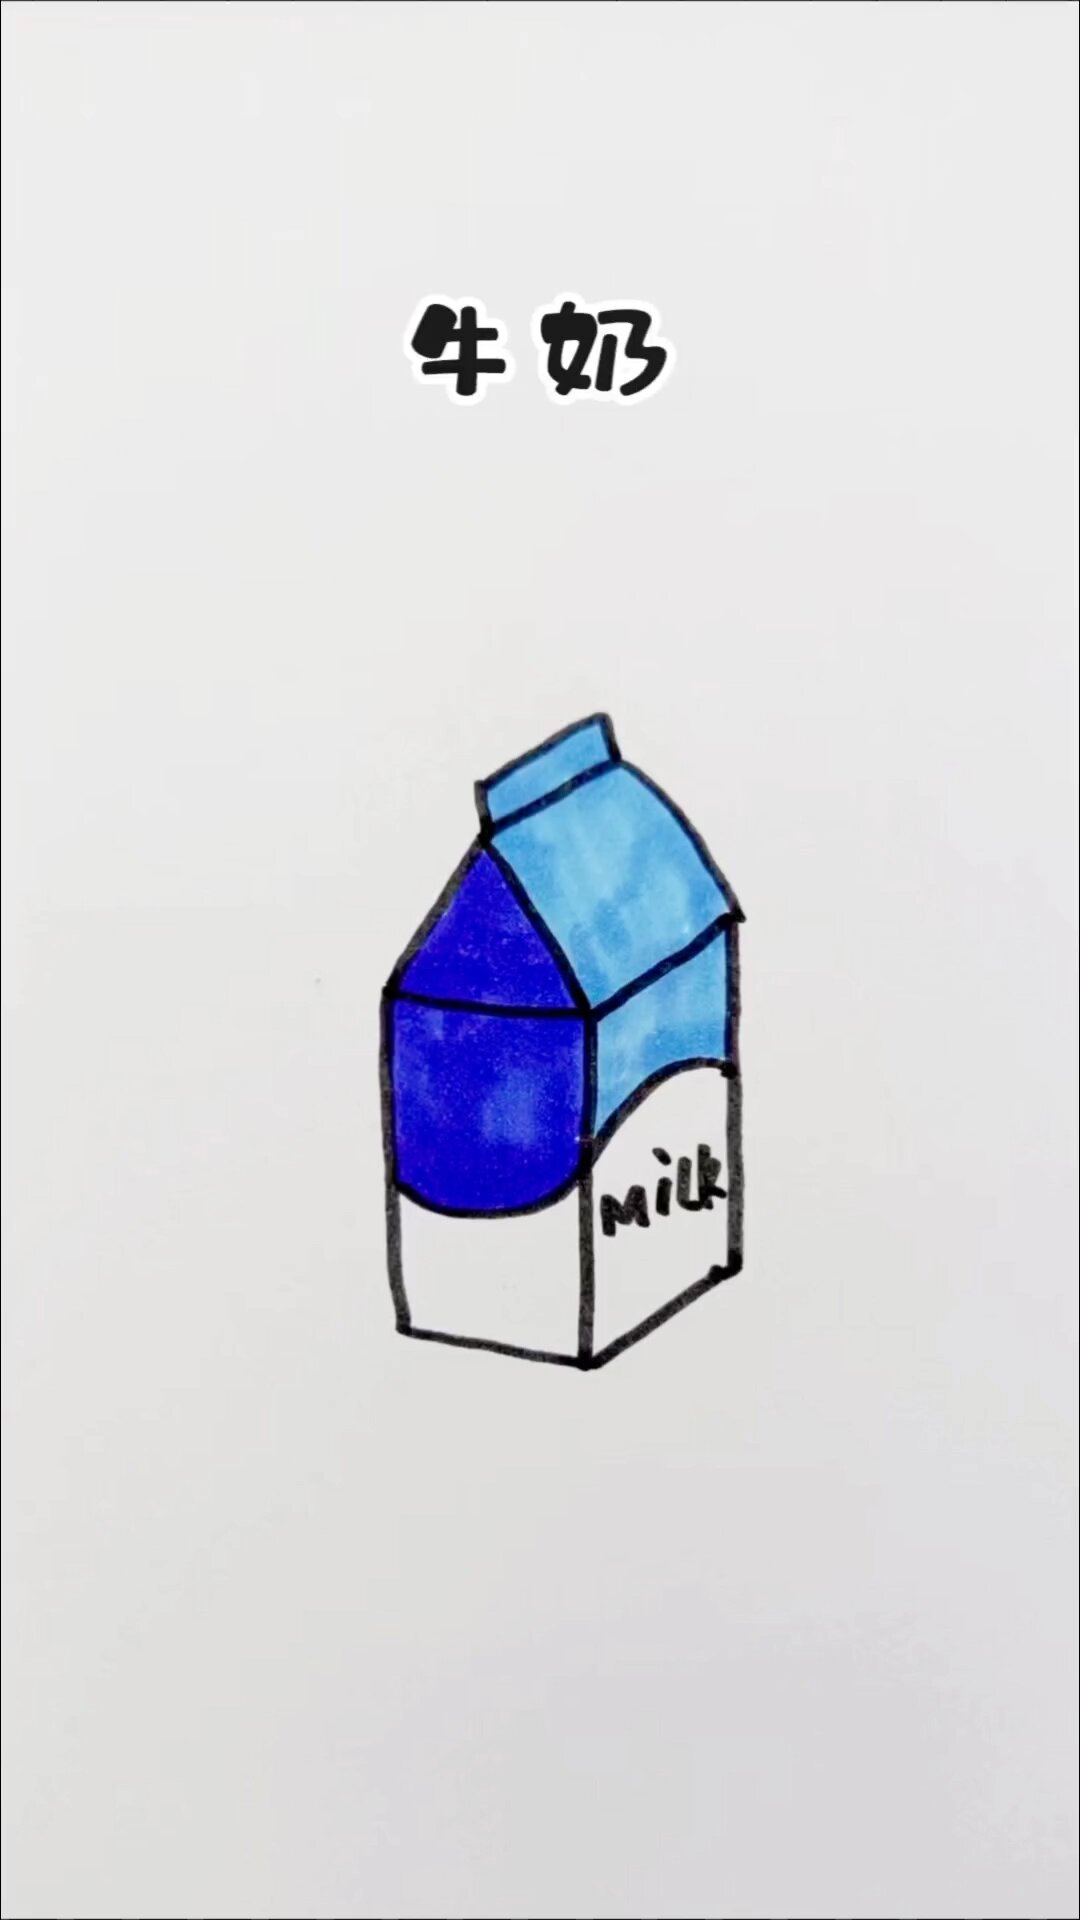 牛奶画 简单图片